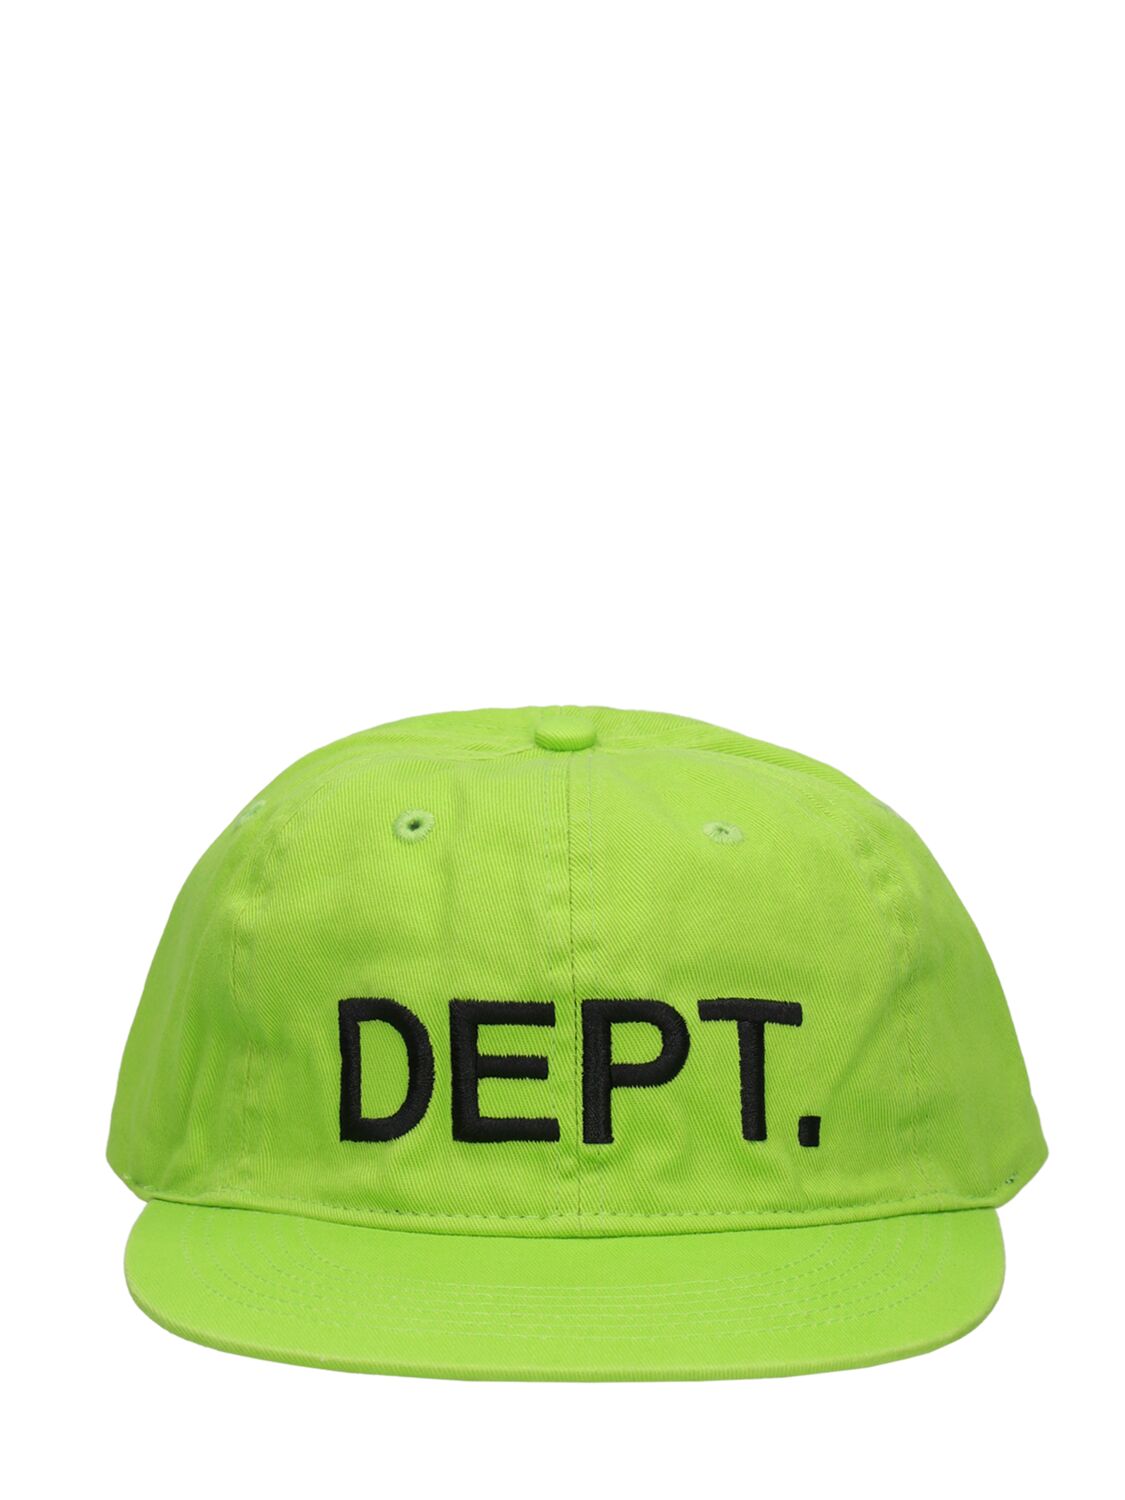 GALLERY DEPT. Dept. Hat